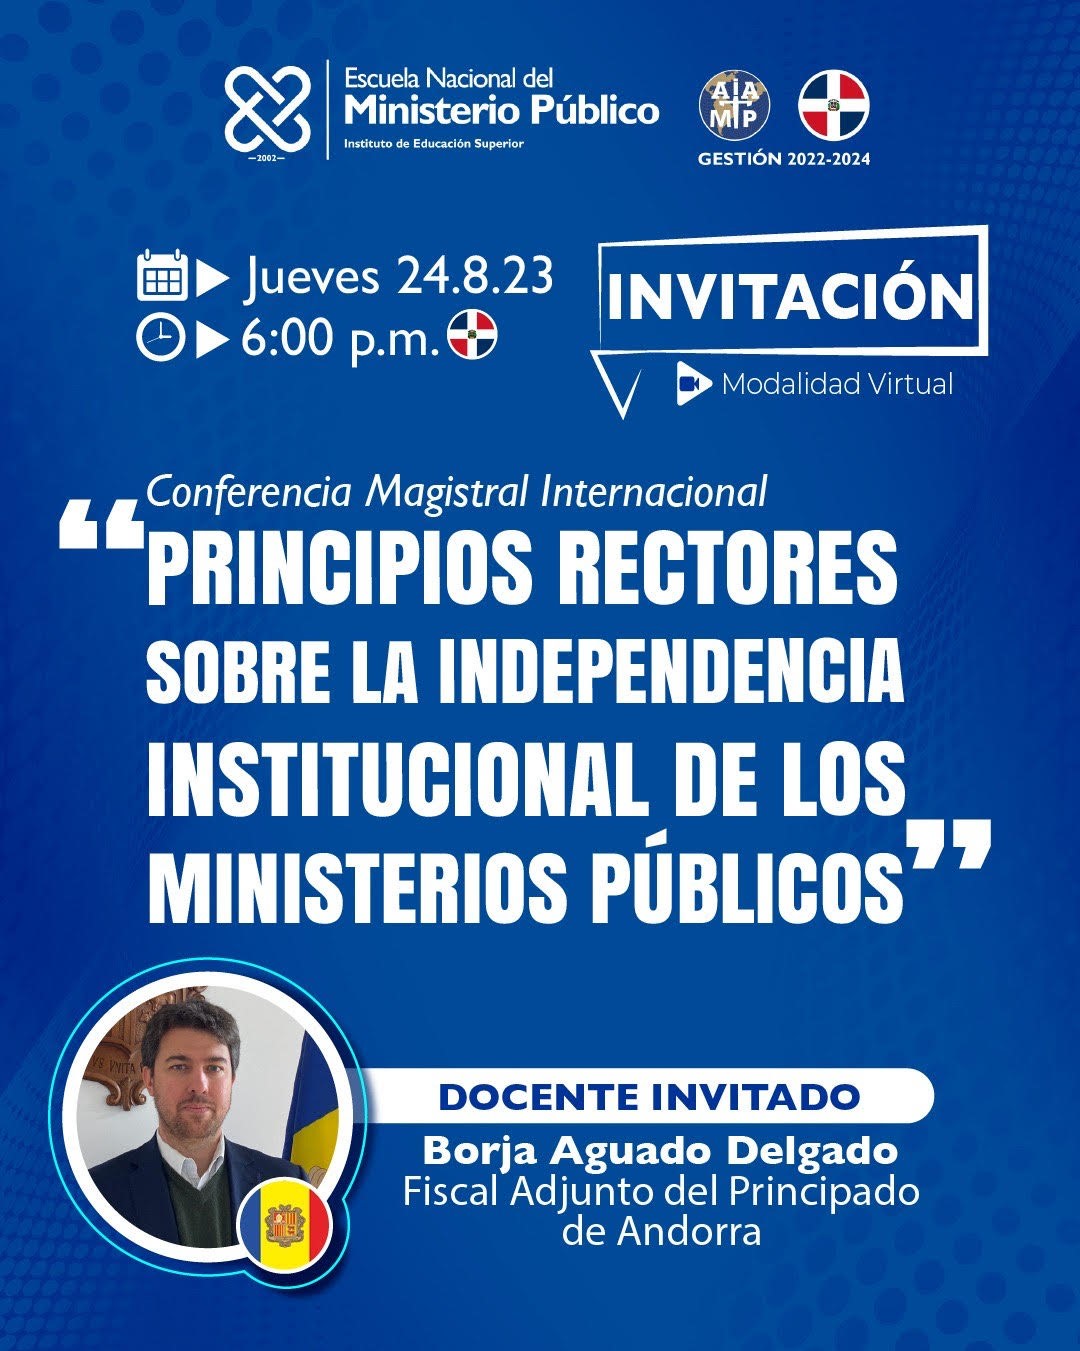 Principios Rectores sobre Independencia Institucional de los Ministerios Públicos